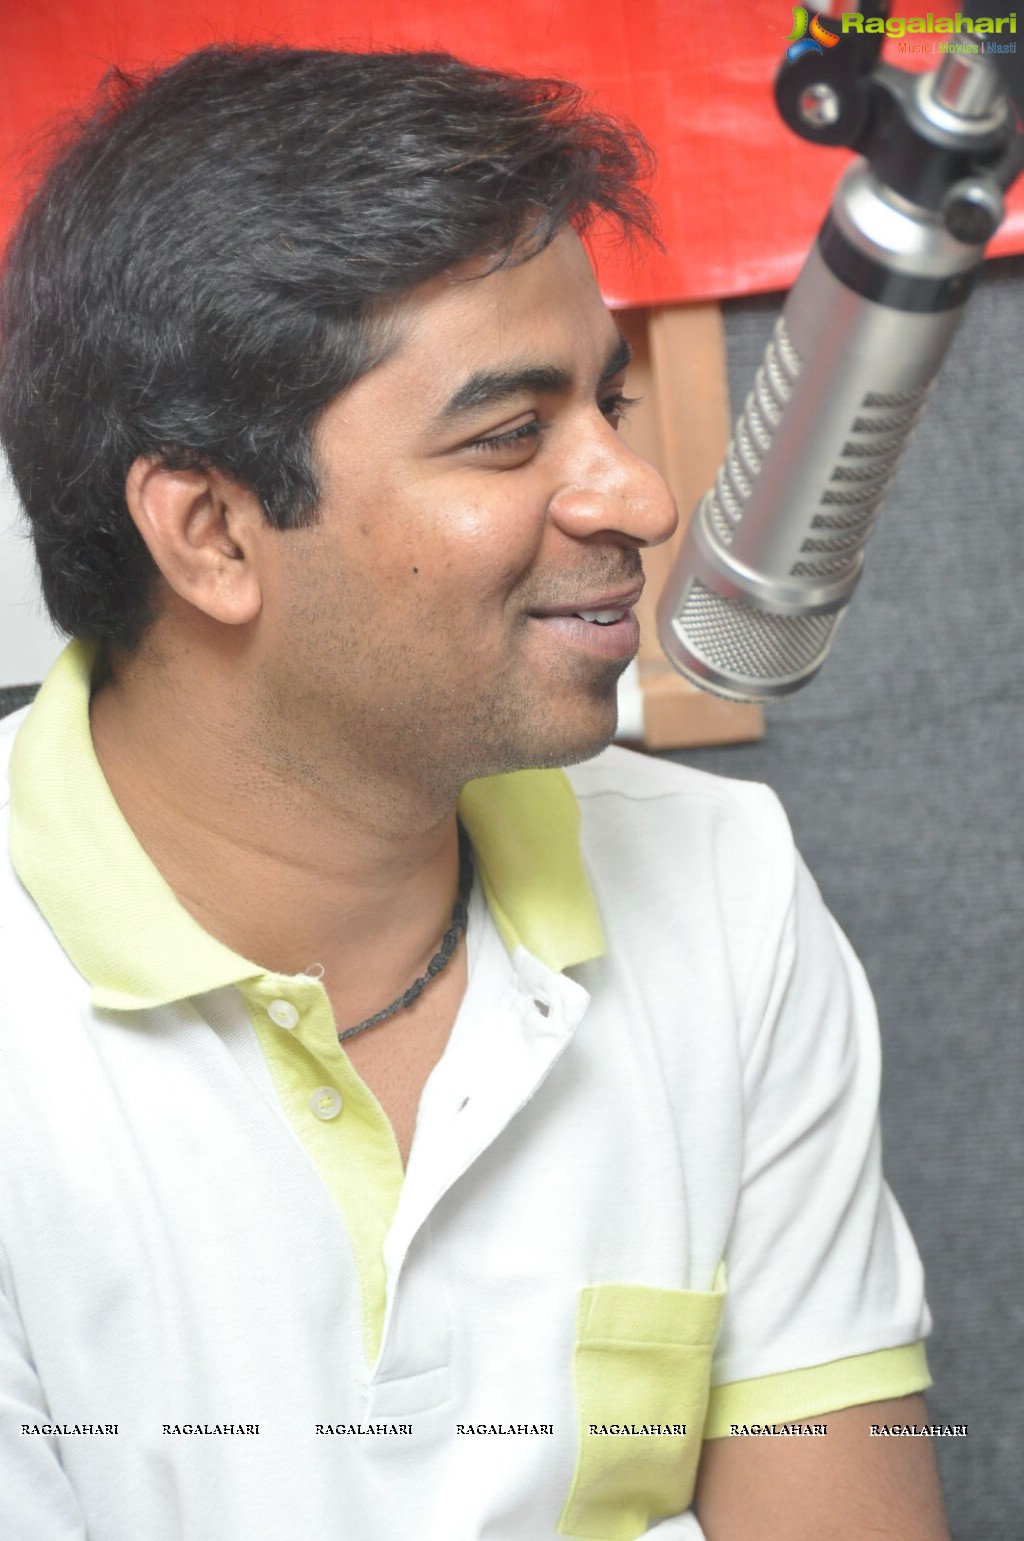 Jagannatakam Song Launch at 92.7 BIG FM